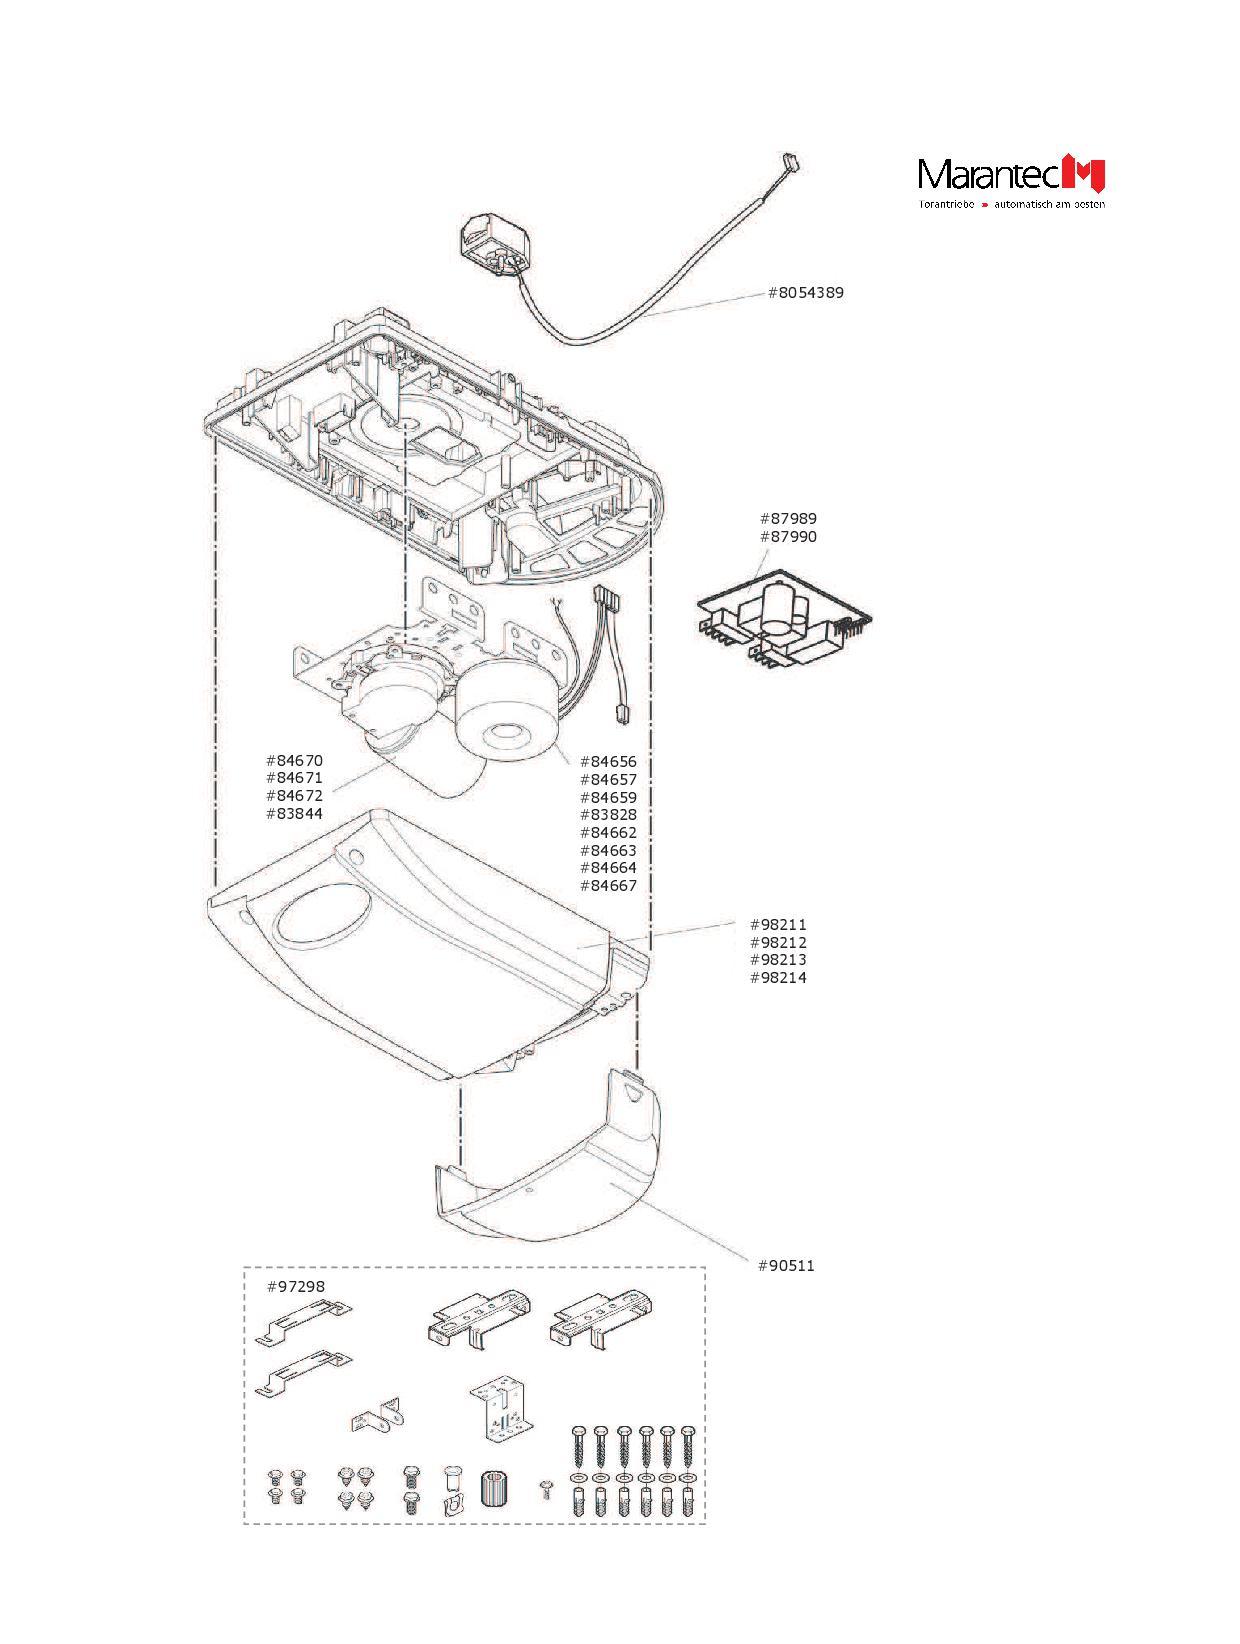 Marantec Gleichstrommotor, Artikel Nr. 84672 für den Garagentorantrieb Comfort 252.2